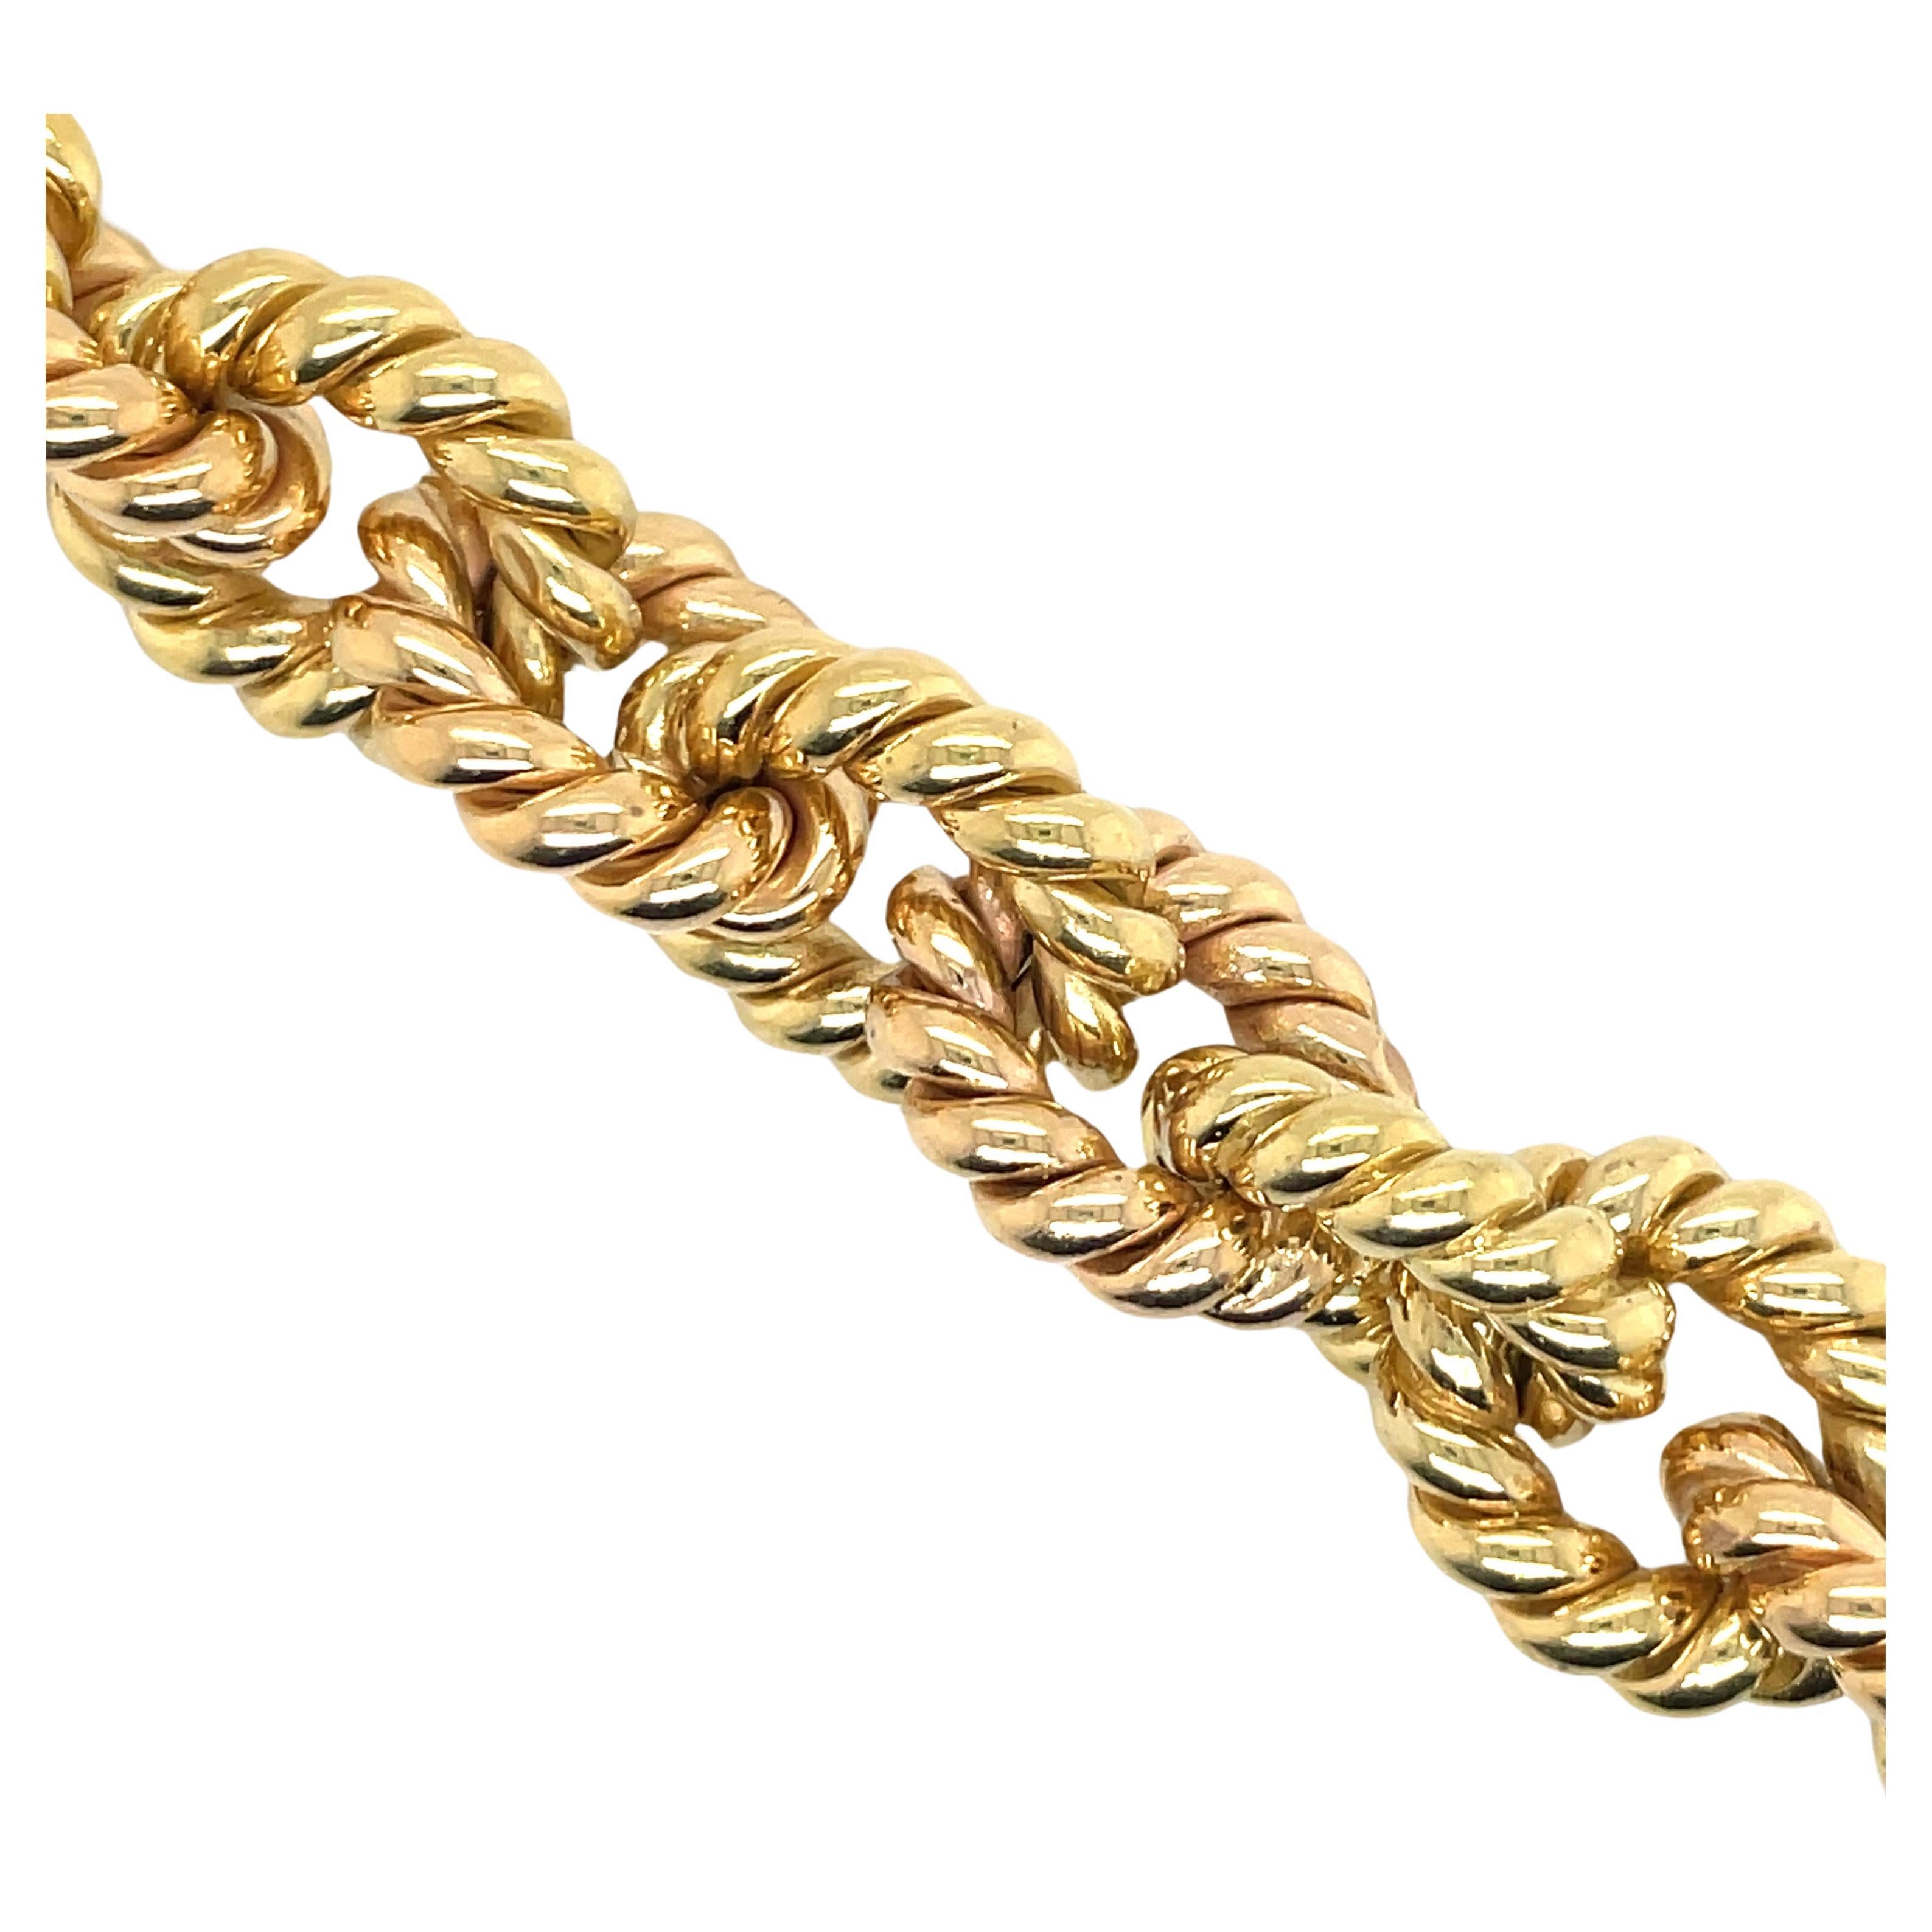 Two Tone twist bracelet featuring 20 alternating 18 Karat Yellow & Rose Gold links weighing 68 Grams.
Stamped 750 MEP